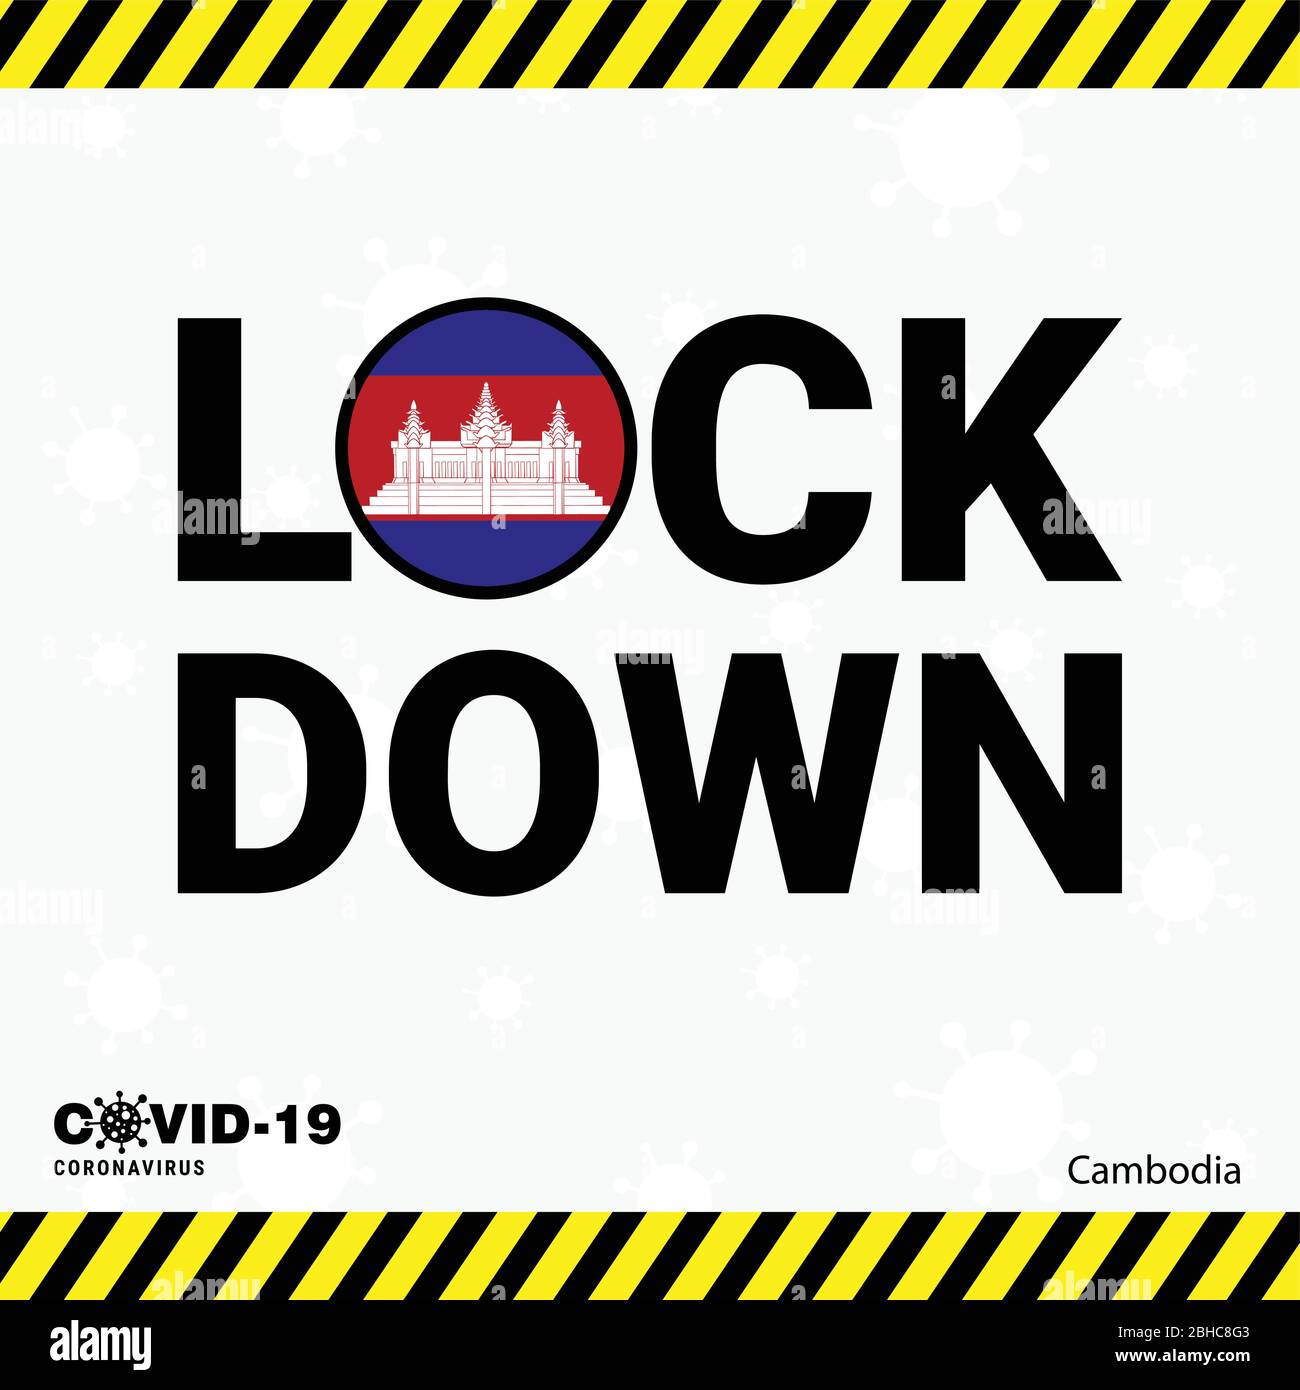 Coronavirus Cambodia Lock DOwn Typography with country flag. Coronavirus pandemic Lock Down Design Stock Vector